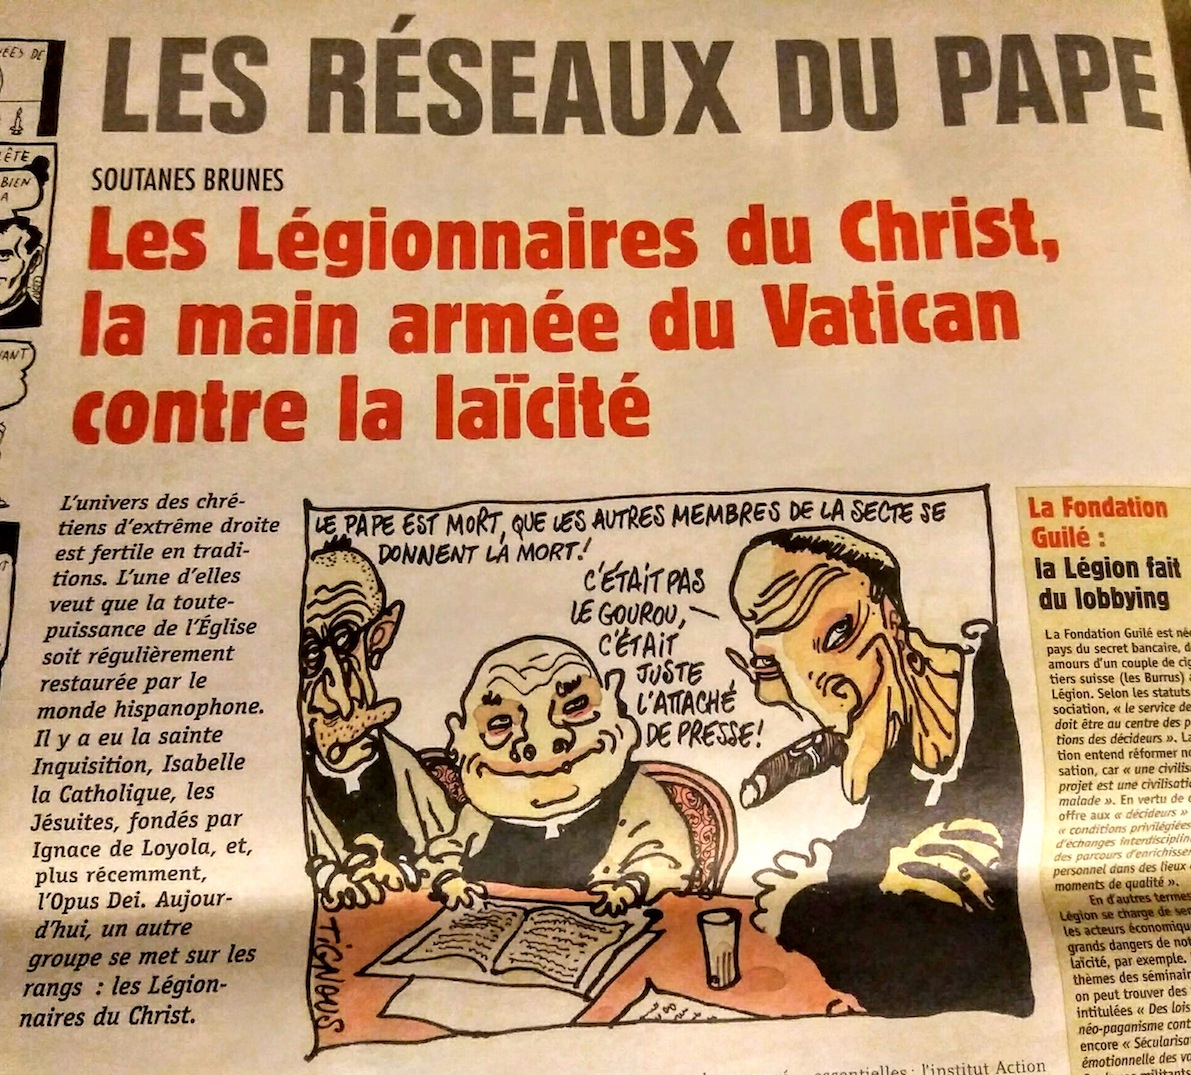 Avec les caricatures du pape Jean-Paul II, Charlie Hebdo était légitime. Le journal se foutait des dogmes et des autorités religieuses : ça doit rester possible, toujours.Ne nous en prenons jamais aux croyants mais à leurs chefs. Ni dieu ni maître.Vive la liberté, merde !